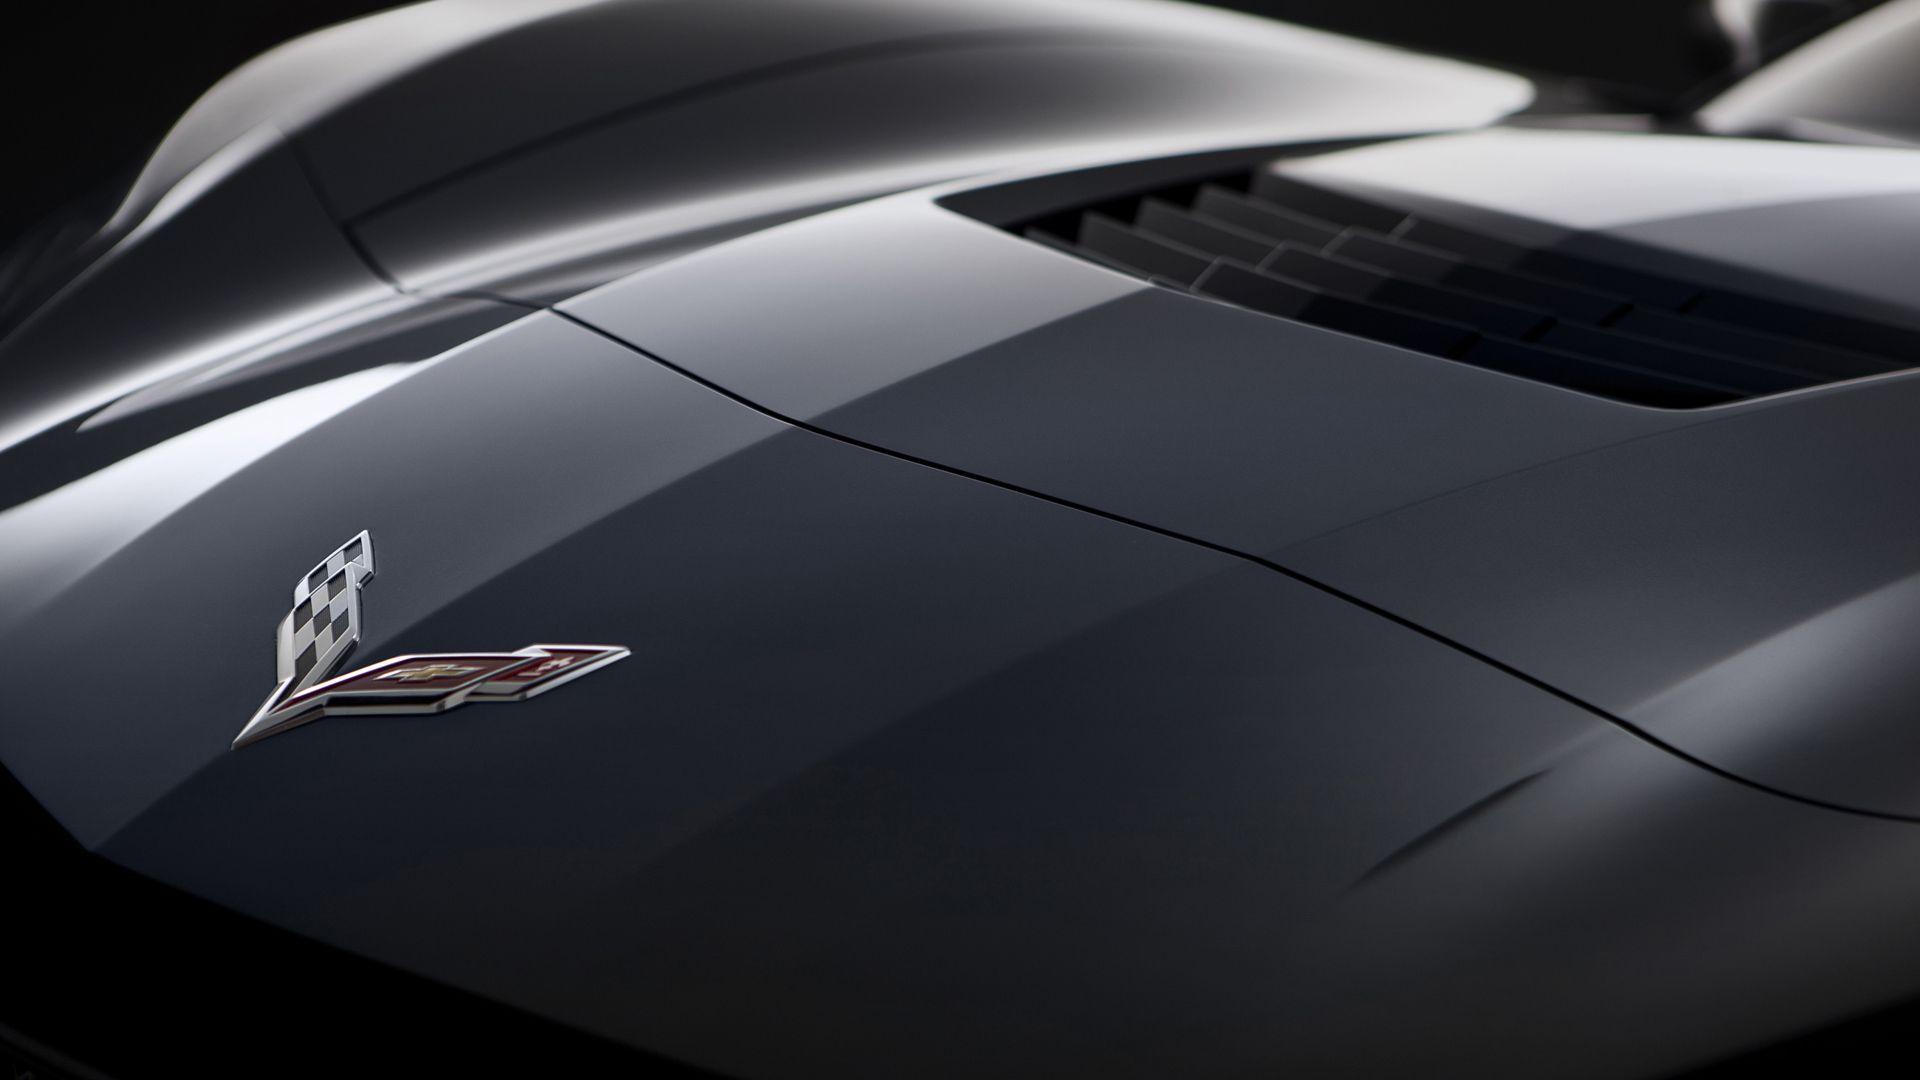 Cool Corvette Logo - Corvette Logo Wallpapers | PixelsTalk.Net